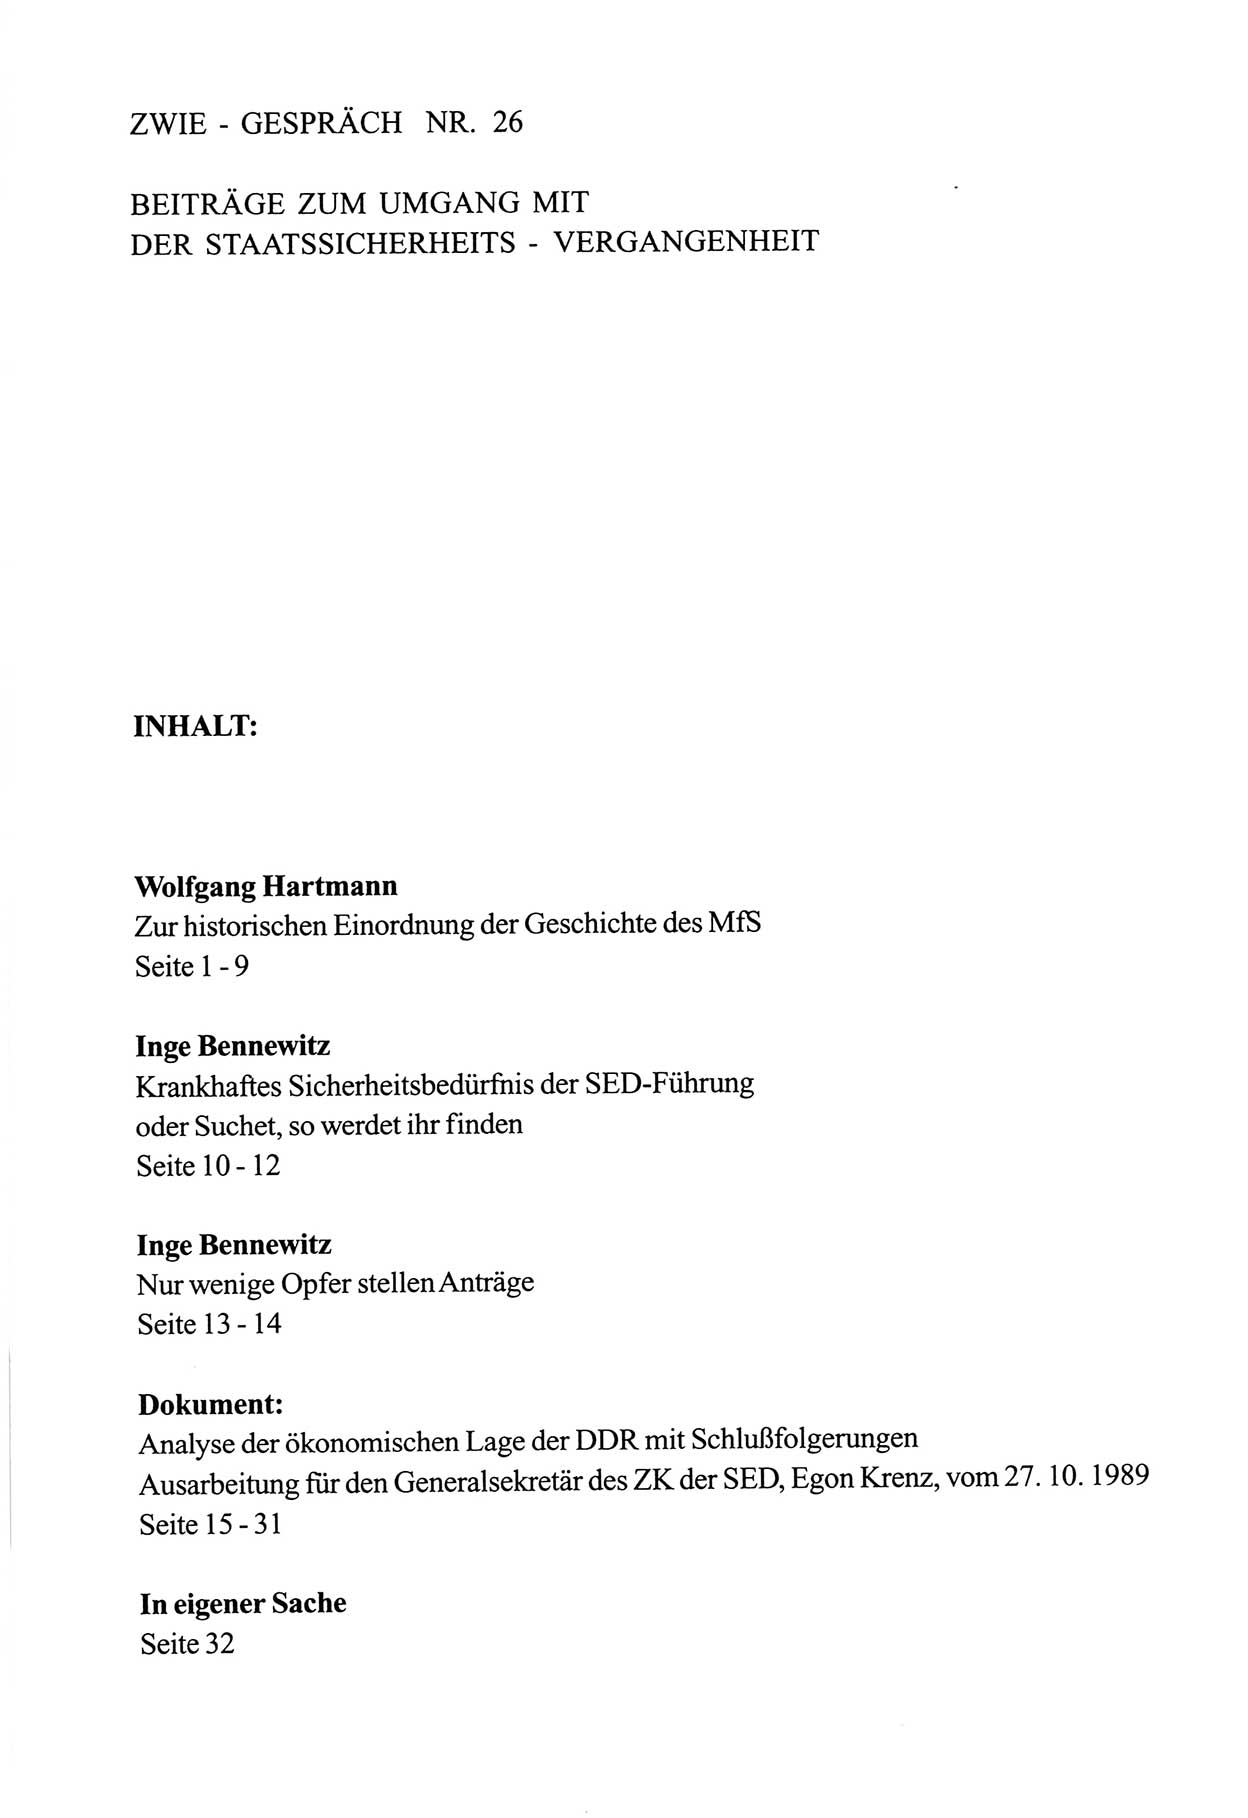 Zwie-Gespräch, Beiträge zum Umgang mit der Staatssicherheits-Vergangenheit [Deutsche Demokratische Republik (DDR)], Ausgabe Nr. 26, Berlin 1995, Seite 33 (Zwie-Gespr. Ausg. 26 1995, S. 33)